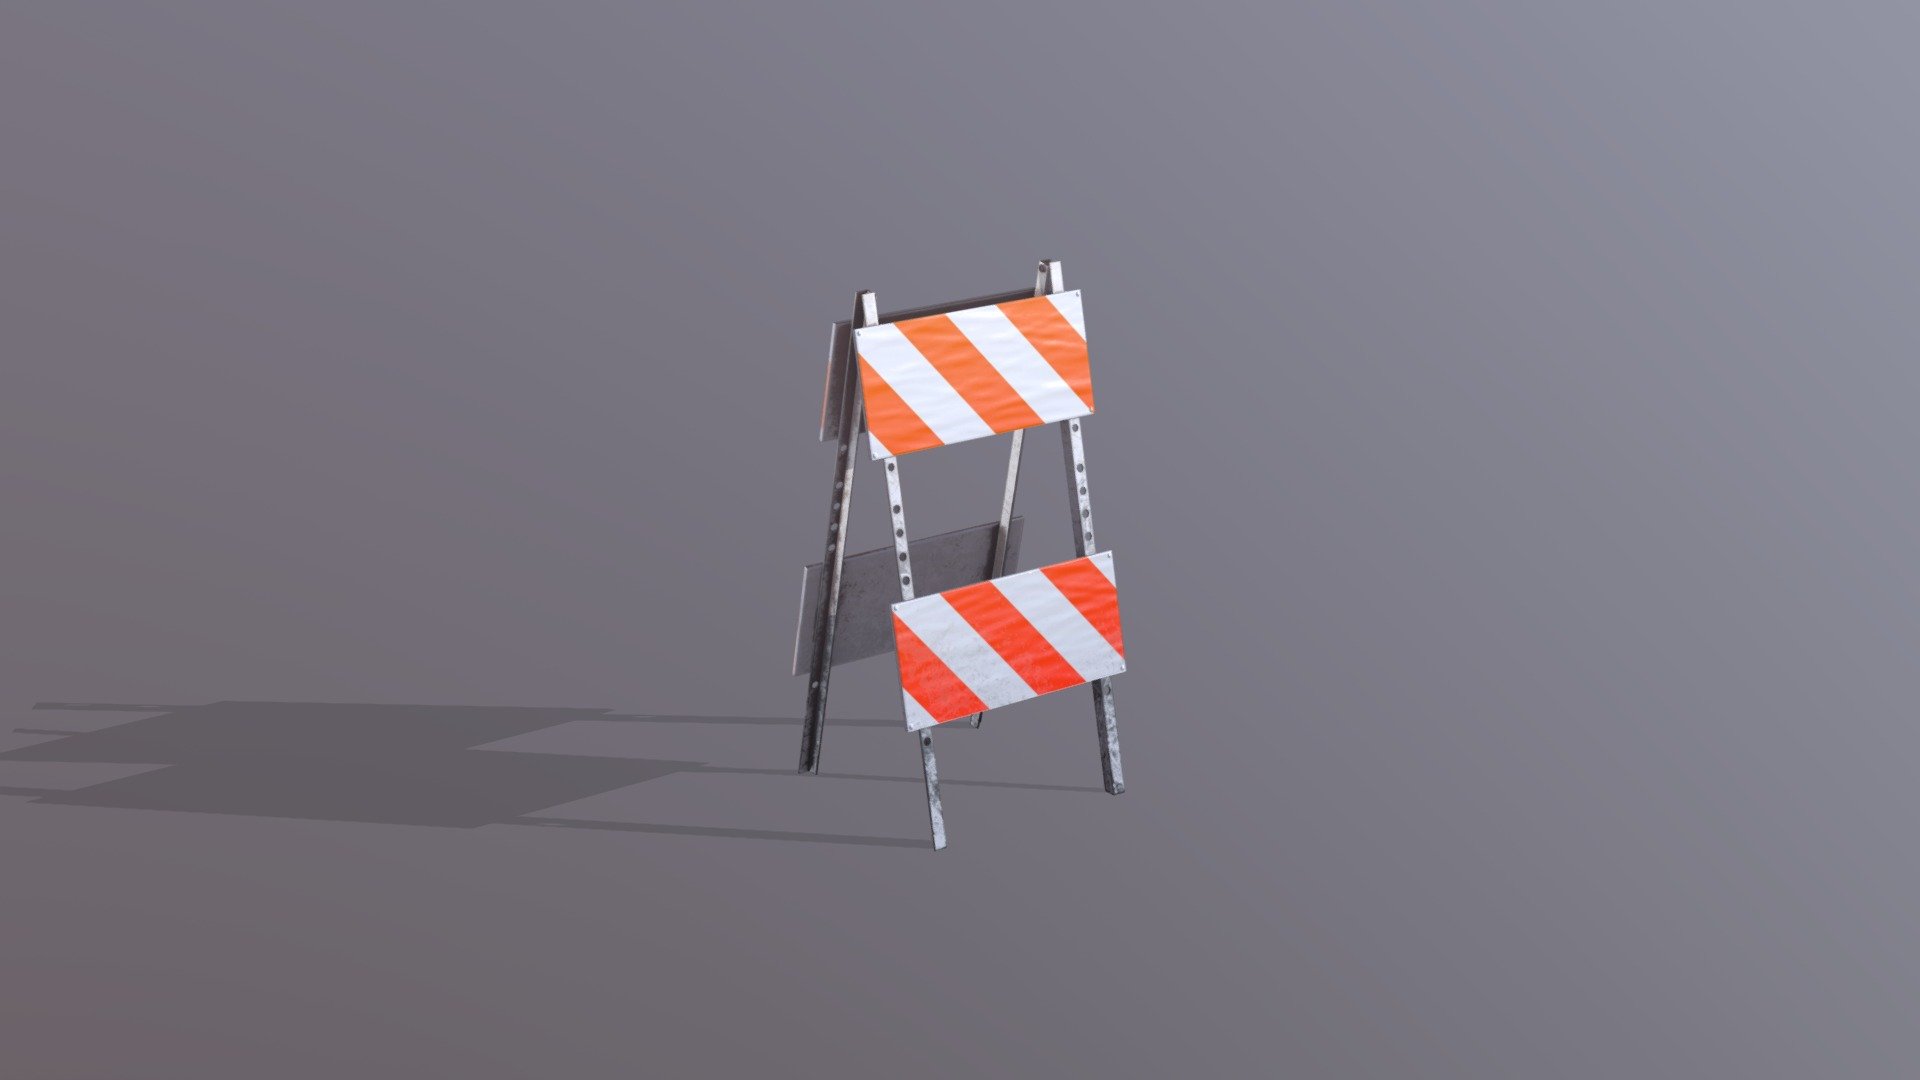 Stylized Traffic Barrier - Traffic Barrier - 3D model by mattrozenboim 3d model